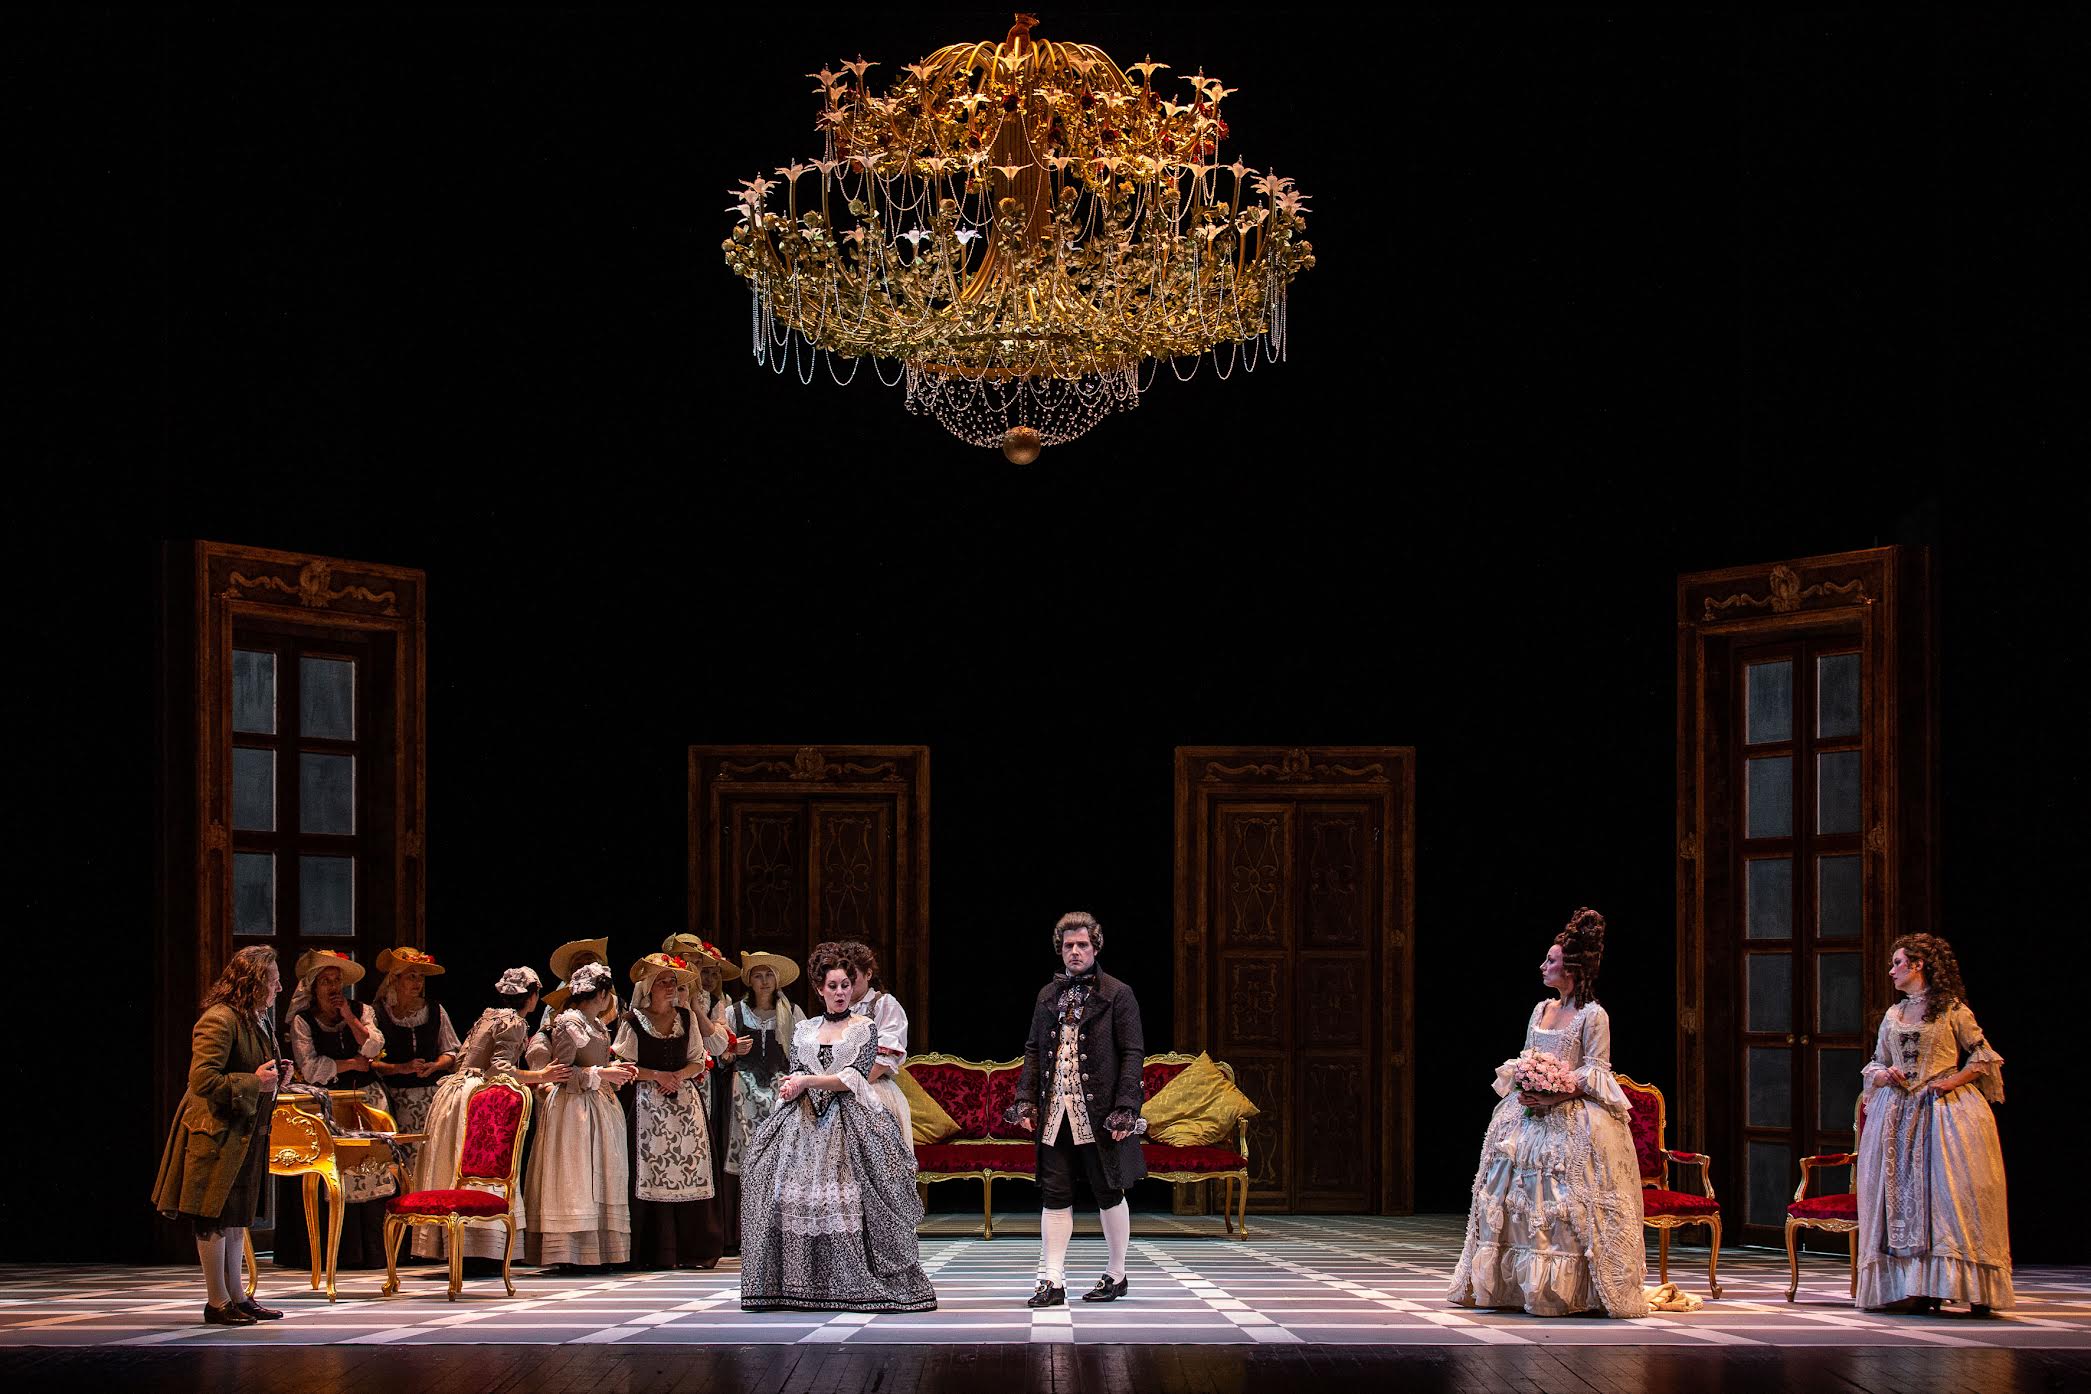 Le nozze di Figaro di Wolfgang Amadeus Mozart prodotte dalla Fondazione Teatro Nuovo Giovanni da Udine sono state scelte per inaugurare la stagione artistica 2023 del Teatro Filarmonico di Verona.